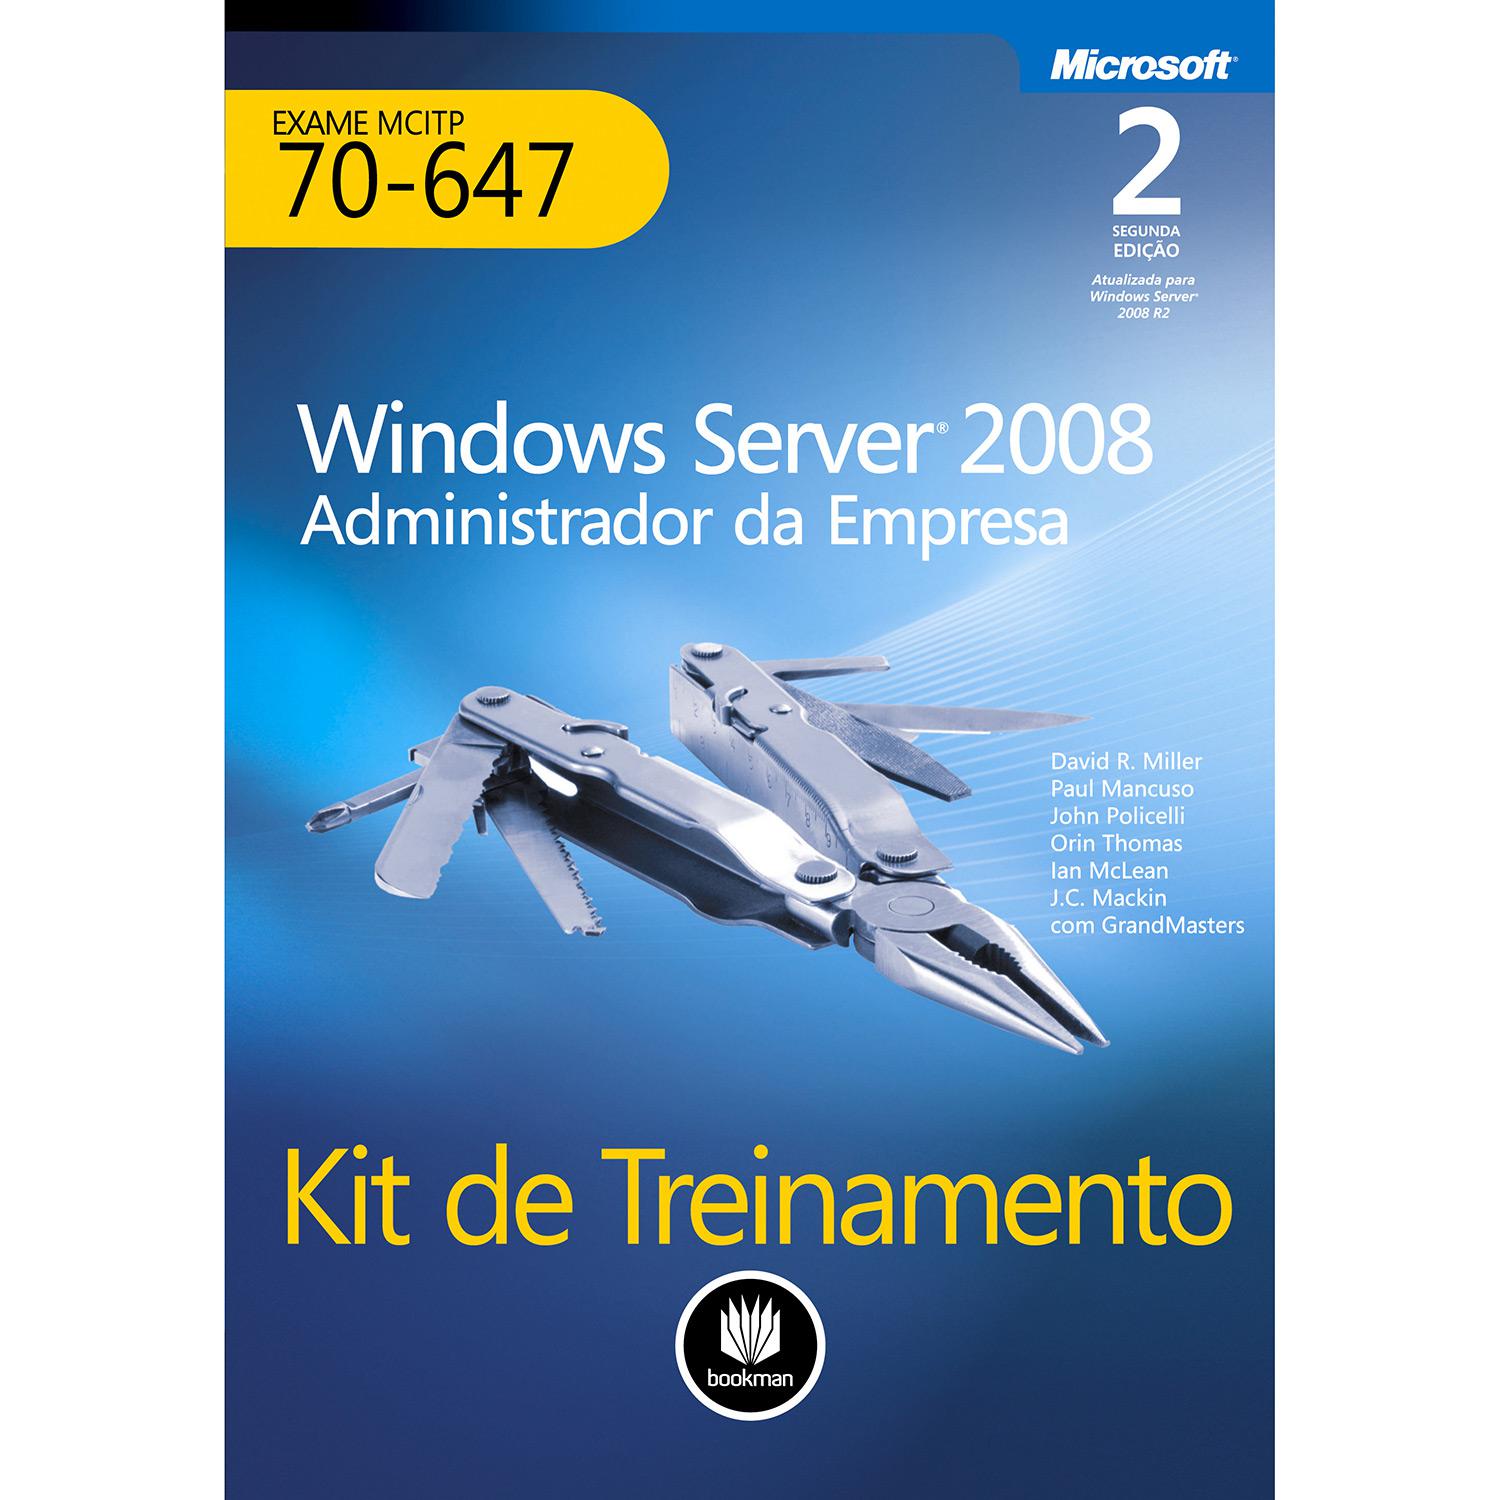 Livro - Kit de Treinamento: Windows Server 2008 Administrador Da Empresa - Exame MCITP 70-647 é bom? Vale a pena?